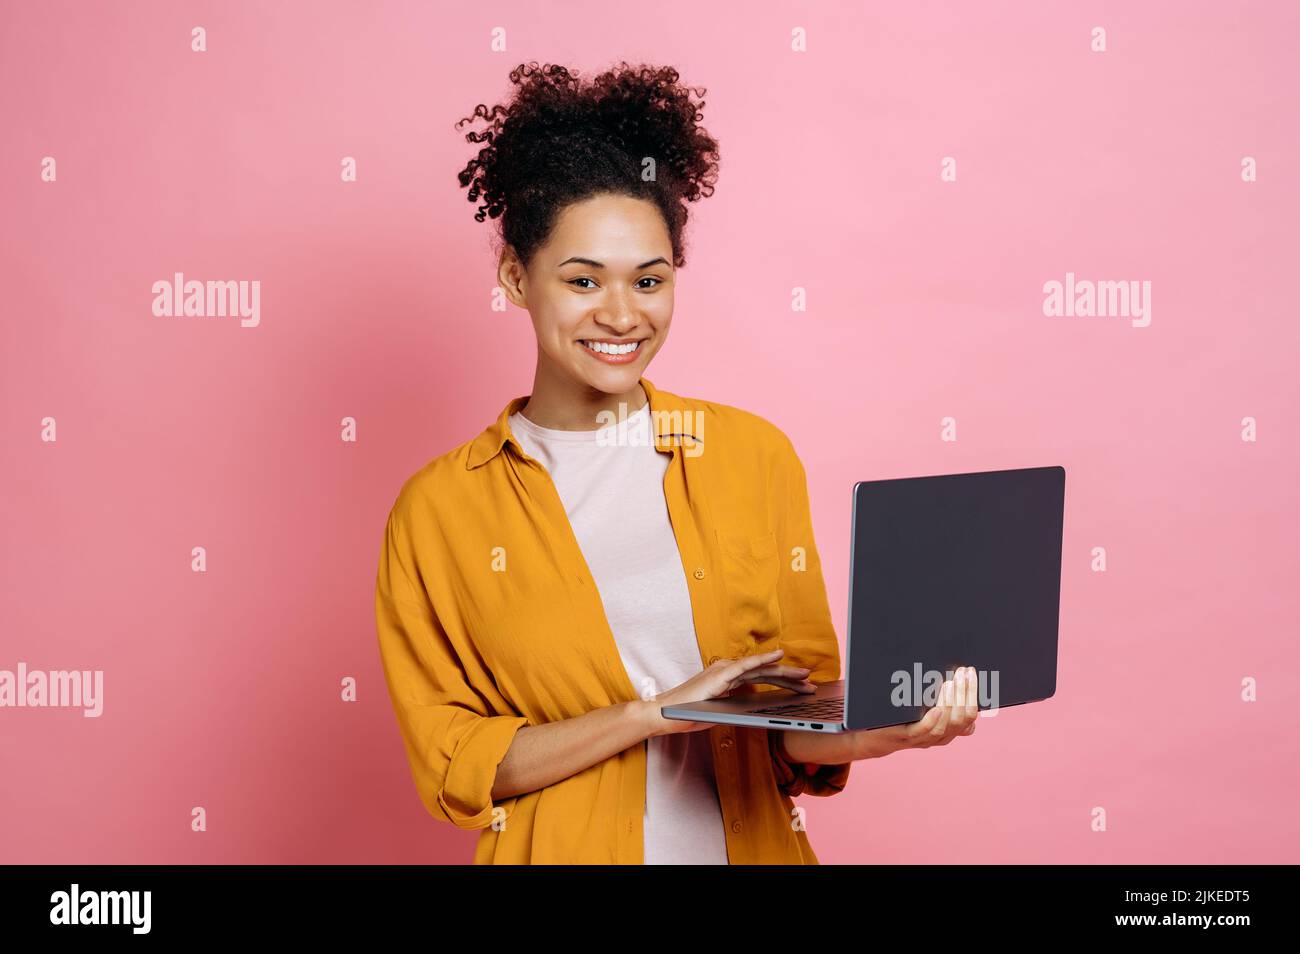 Eine ziemlich erfolgreiche, positive afroamerikanische junge, lockige Frau, die einen offenen Laptop in der Hand hält, sieht freundlich auf die Kamera aus, während sie vor einem isolierten rosa Hintergrund steht und glücklich lächelt Stockfoto